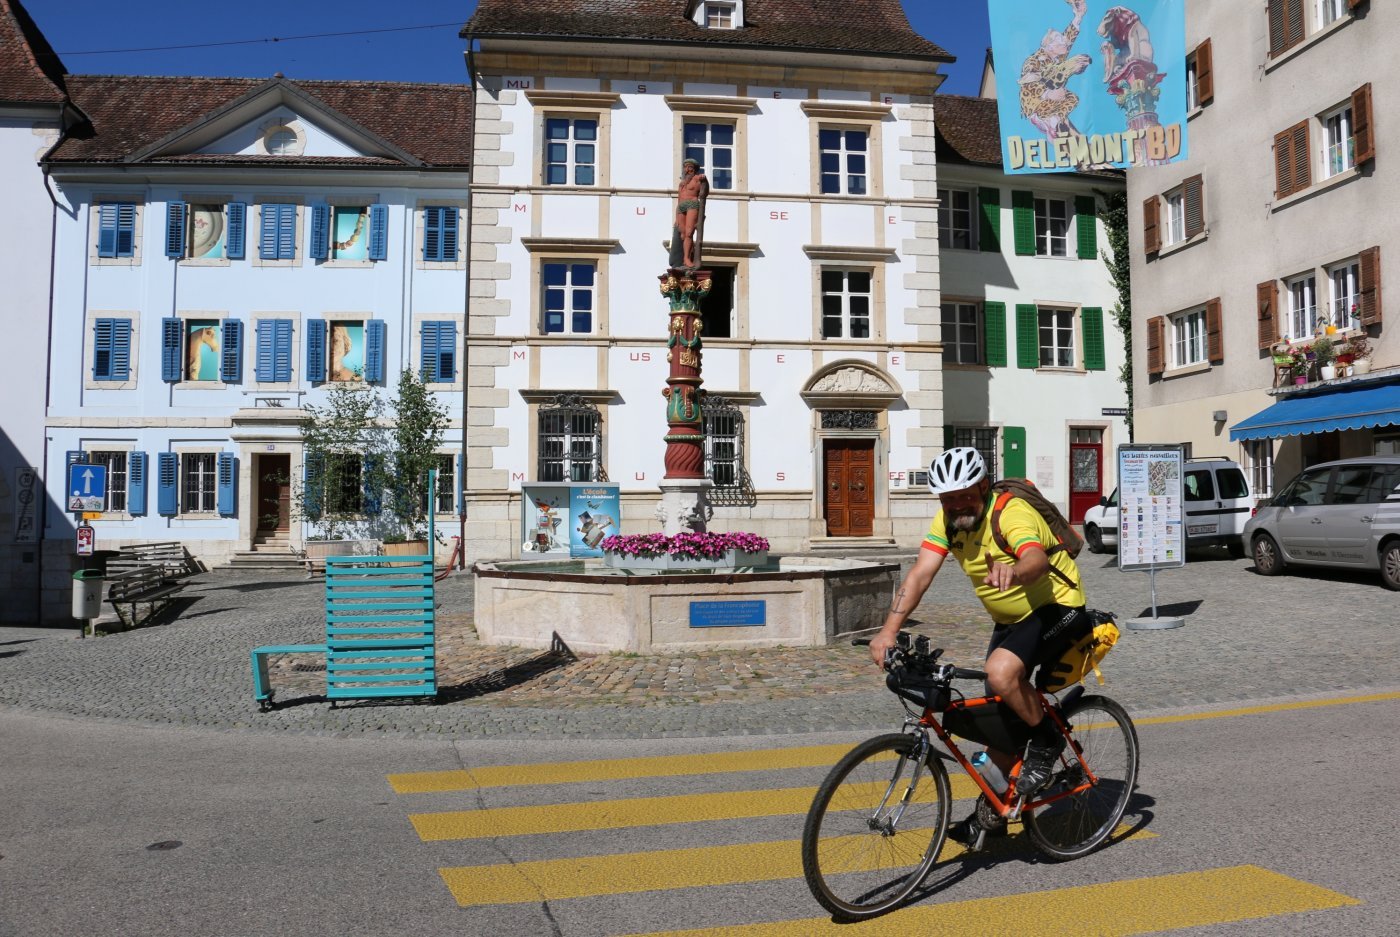 Le Giro di Procap, tour de Suisse à vélo de deux membres de Procap, Markus Spielmann (photo) et Markus Schneeberger, en maillot jaune. Devant le Musée jurassien d'art et d'histoire de Delémont, mercredi 13.7.2022. (Thomas Le Meur)